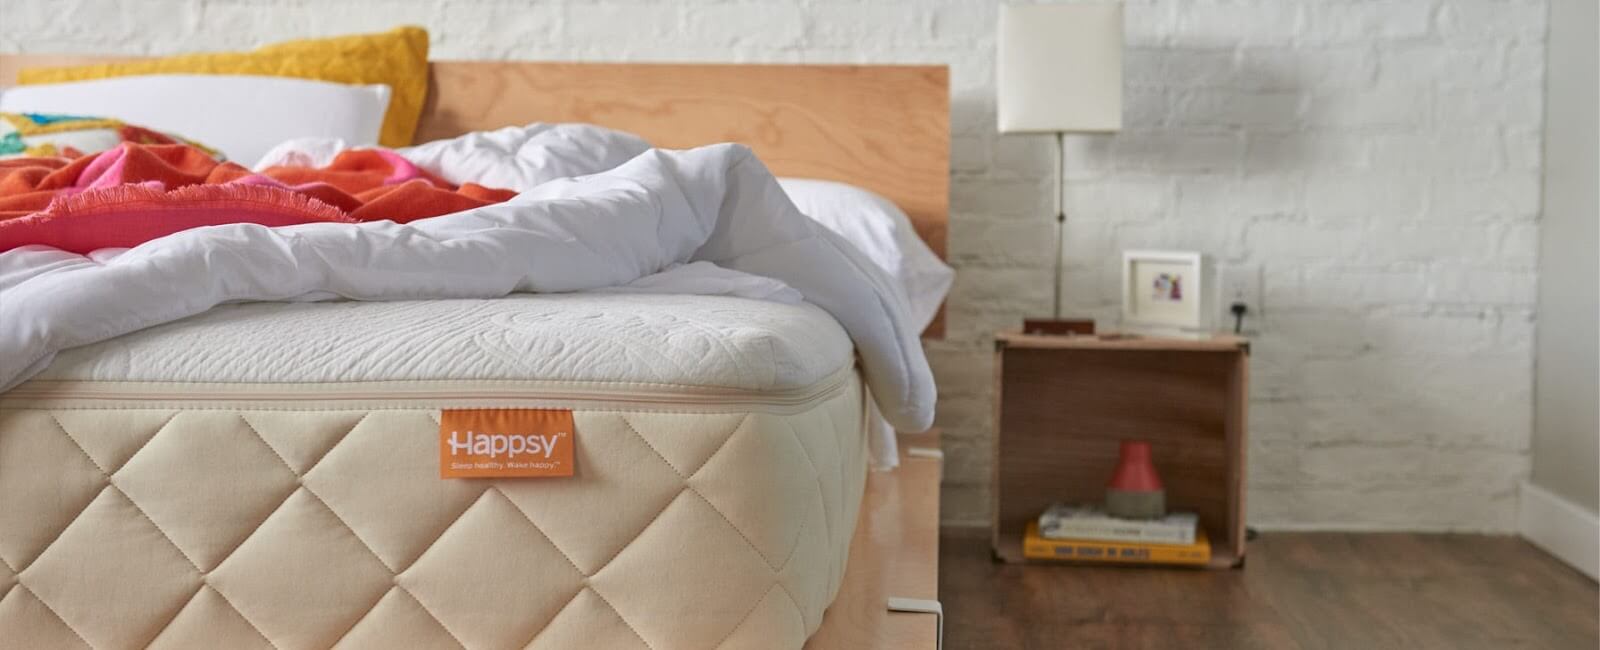 happsy-mattress-1